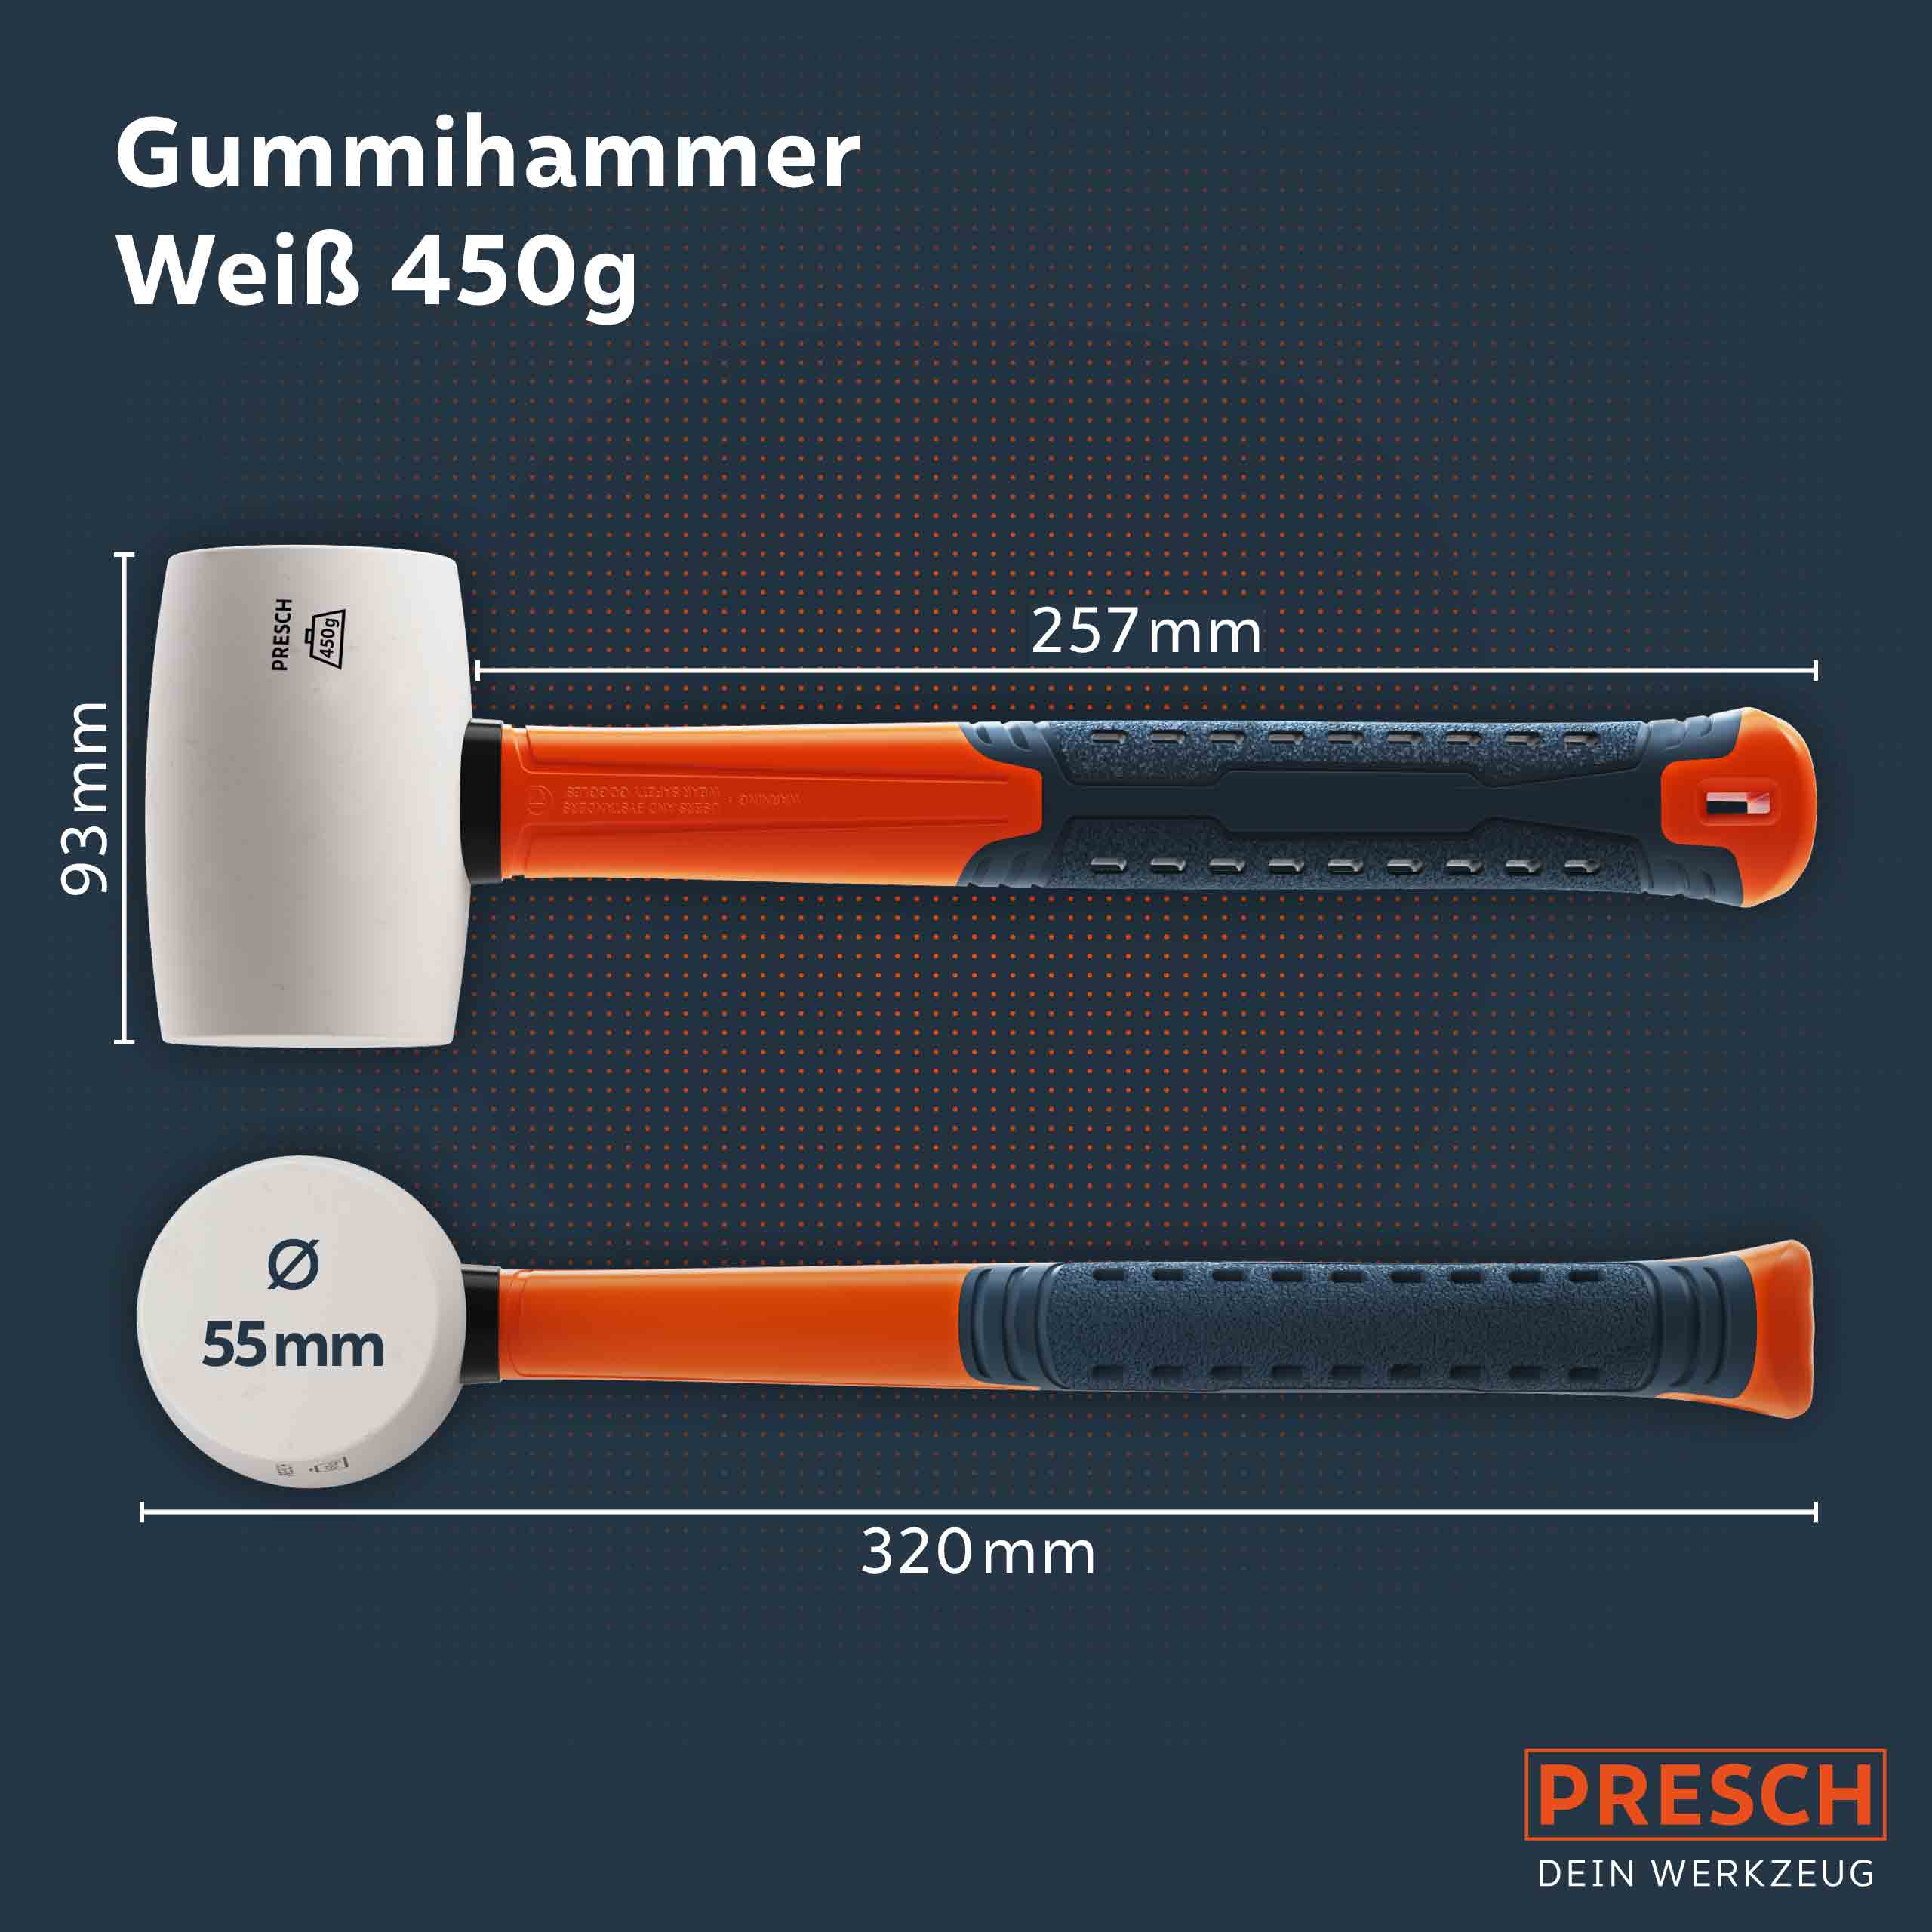 PRESCH Gummihammer Weiß 450g mit präzise abgebildeten Abmessungen und ergonomischem Griff, Schonhammer, Kunststoffhammer